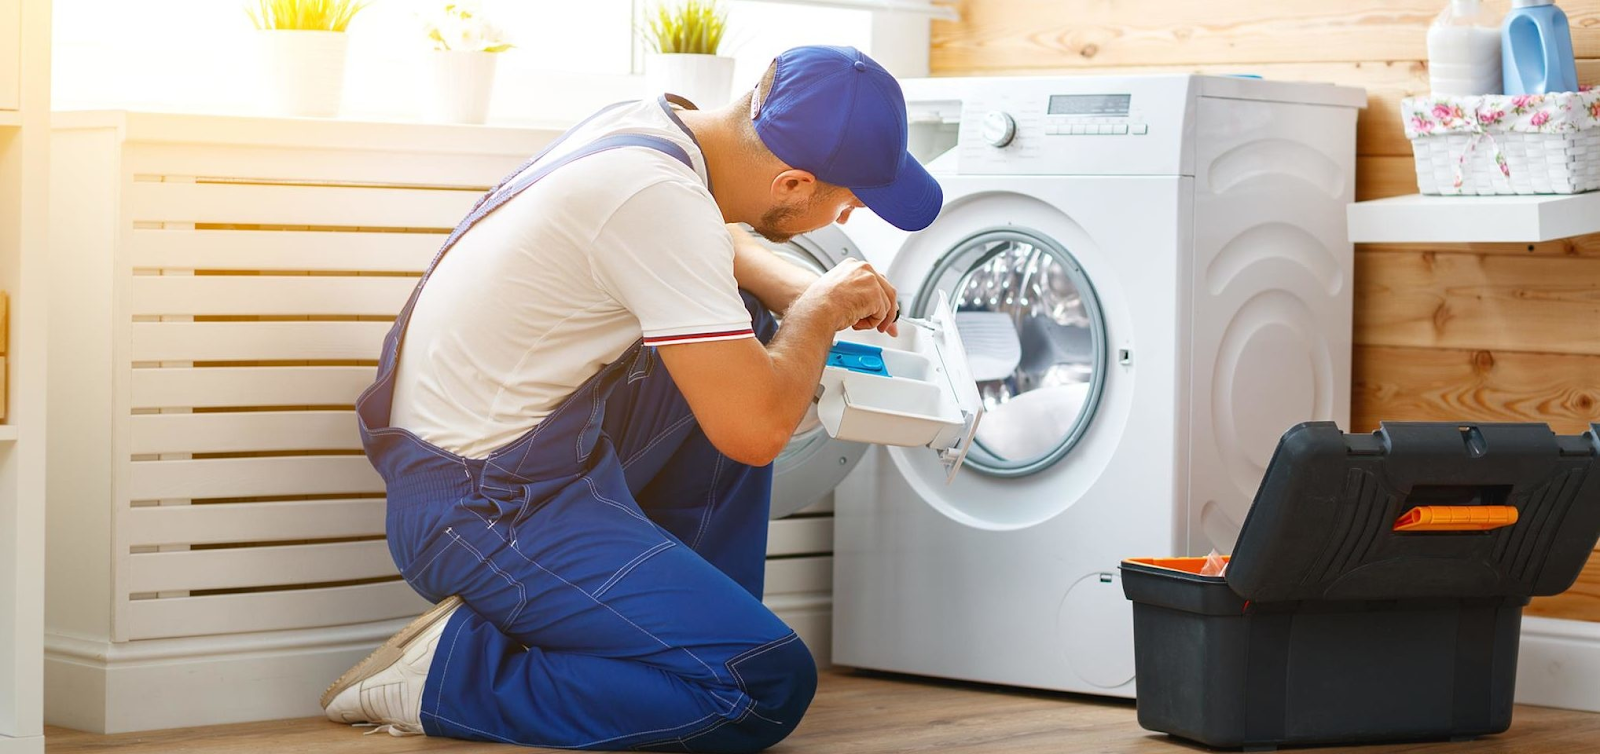 Bảo dưỡng định kỳ máy giặt Electrolux của bạn có thể giúp xác định các sự cố và khắc phục chúng trước khi chúng gây hư hỏng nghiêm trọng cho máy của bạn